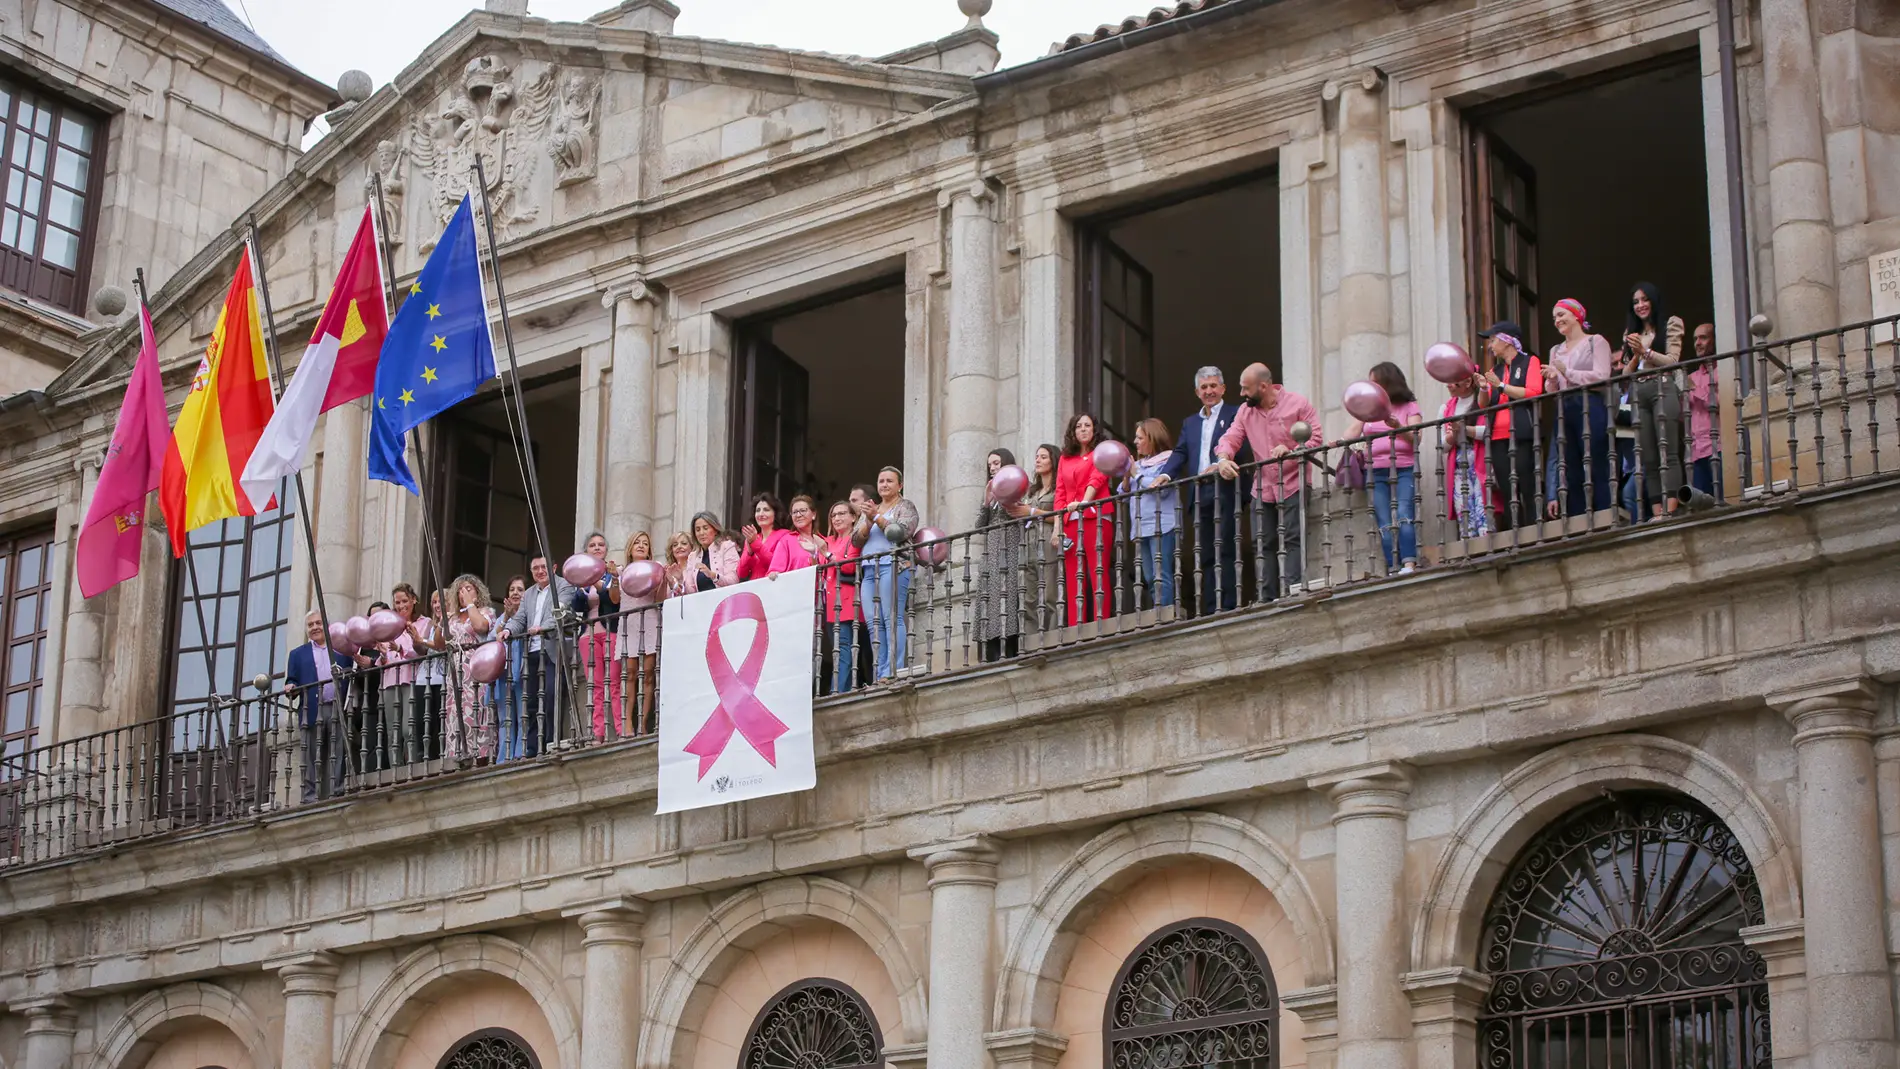 Toledo despliega el lazo rosa en su fachada con motivo del Día Internacional de la lucha contra el Cáncer de Mama